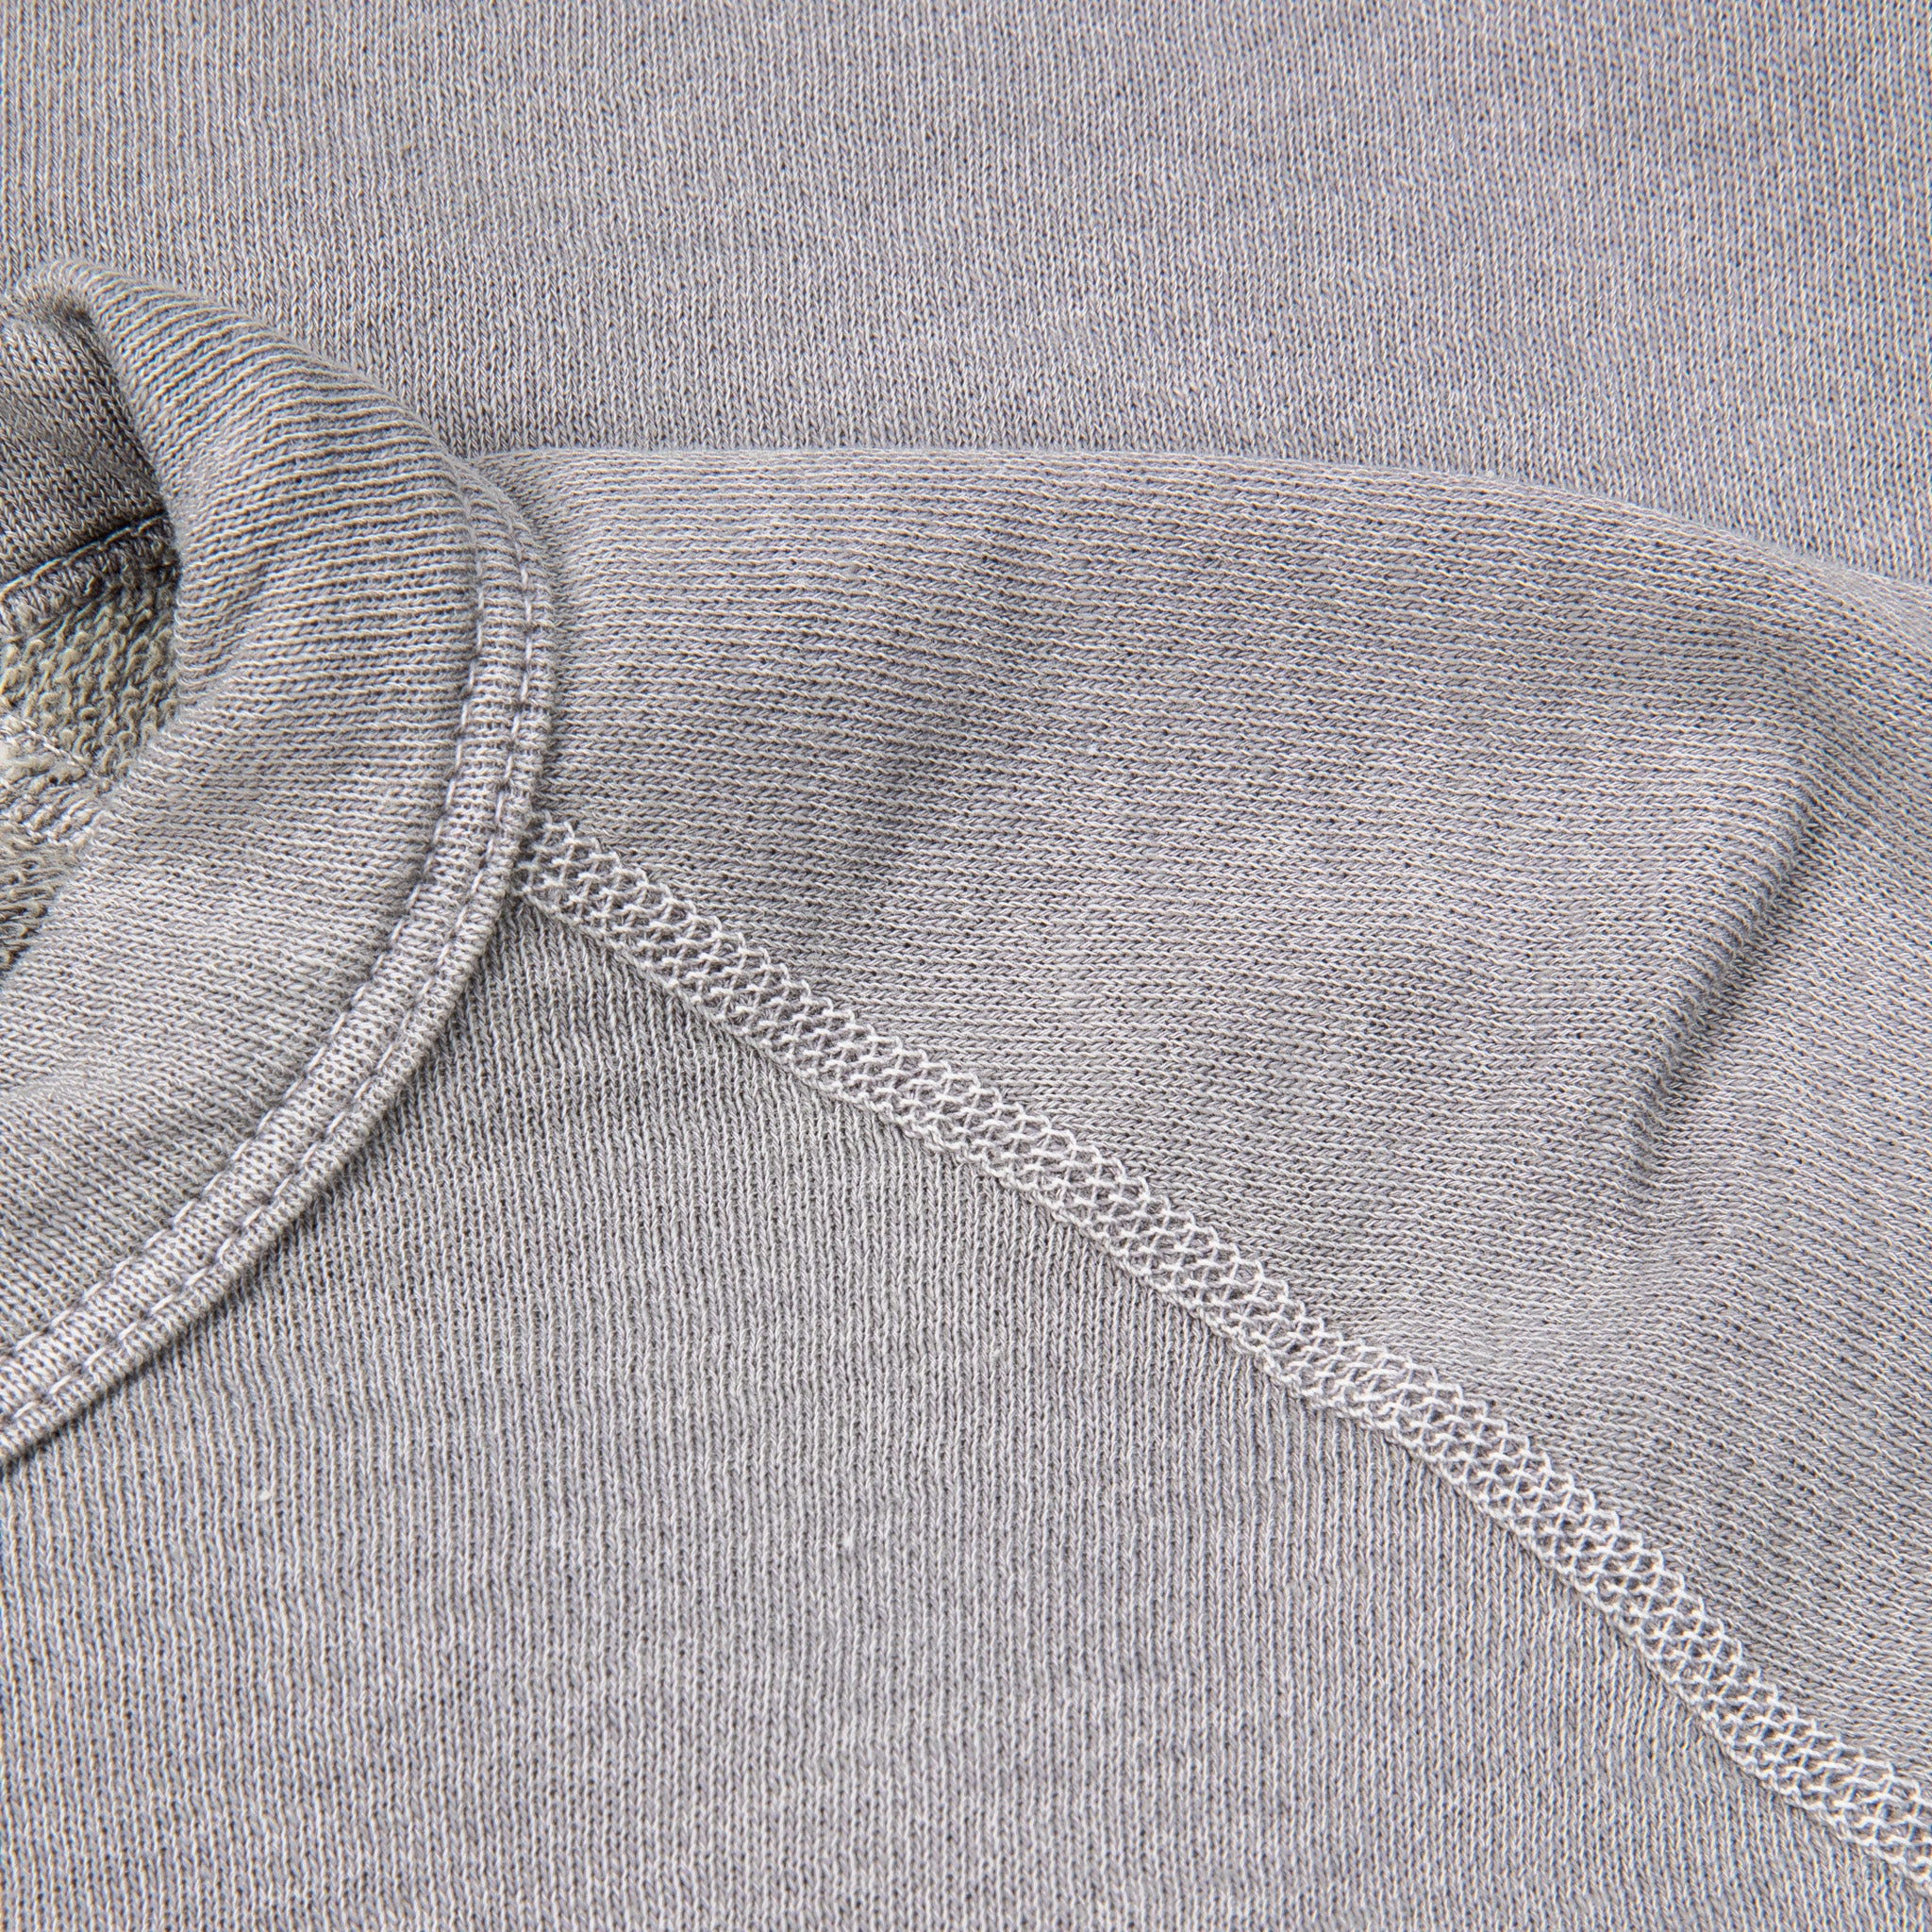 James Perse Vintage Fleece Raglan Sweat Silver Grey